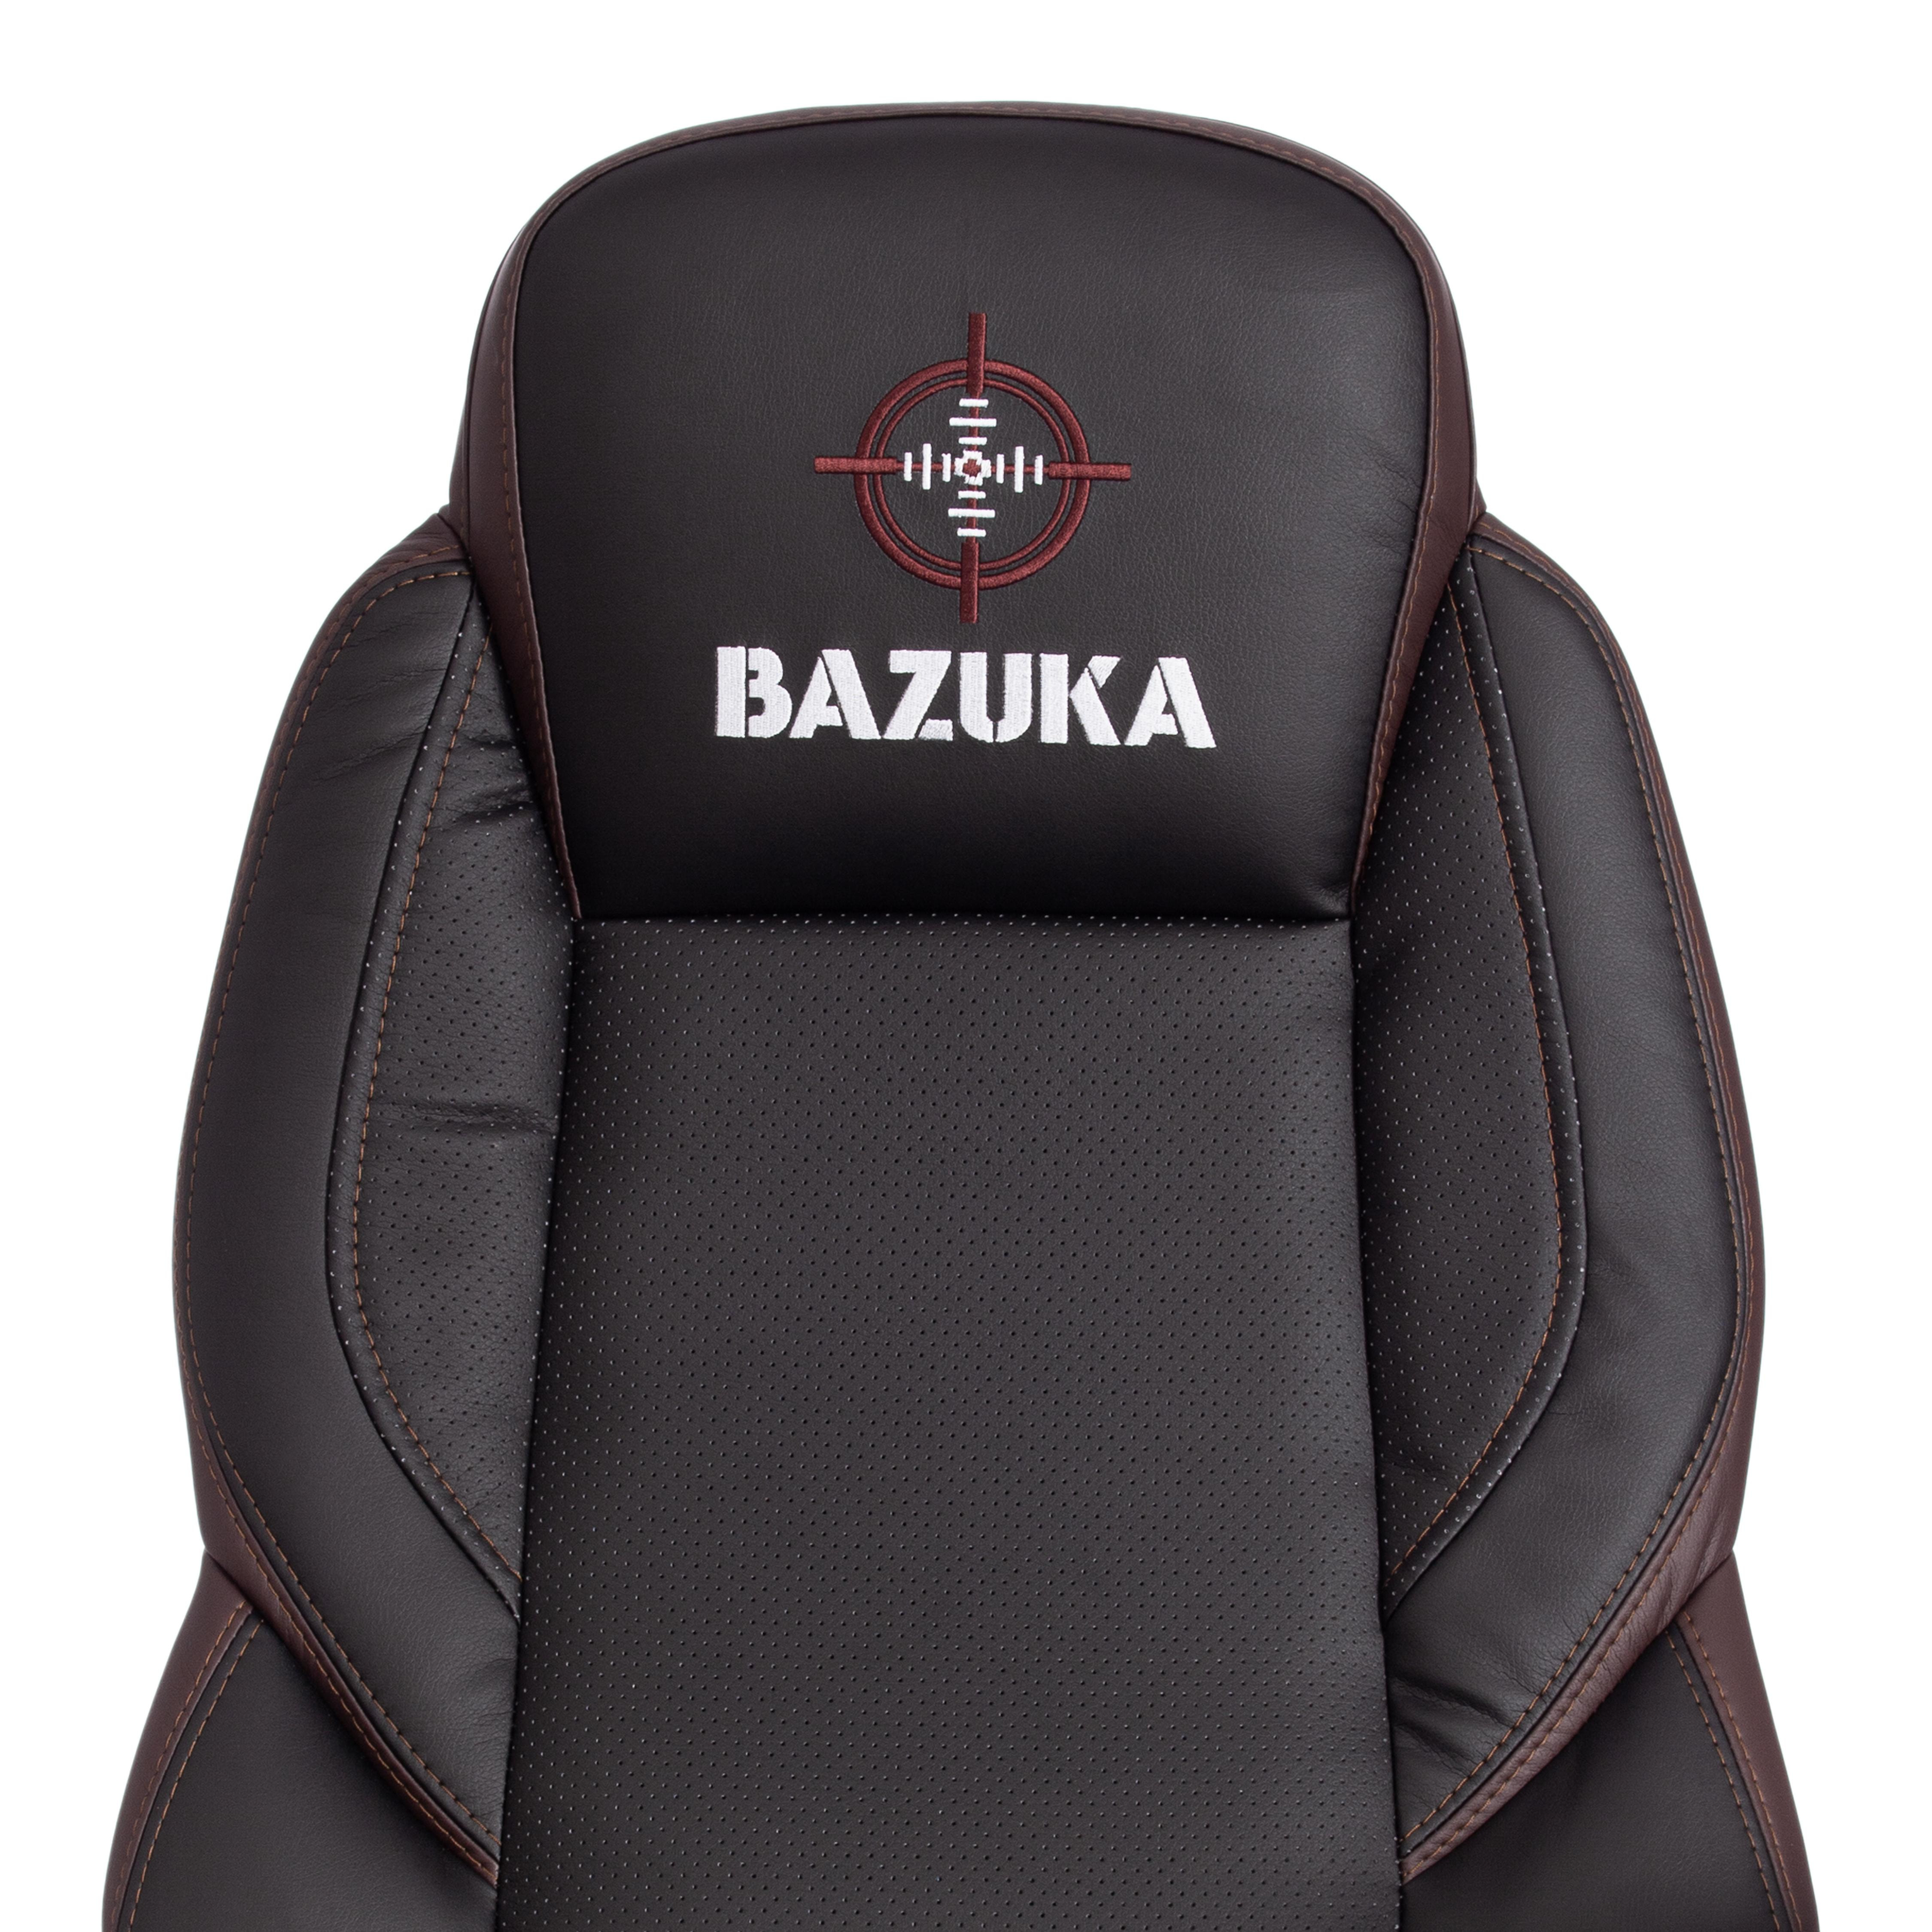 Кресло BAZUKA кож/зам, черный/черный перфорированный/коричневый, 36-6/36-6/06/36-36